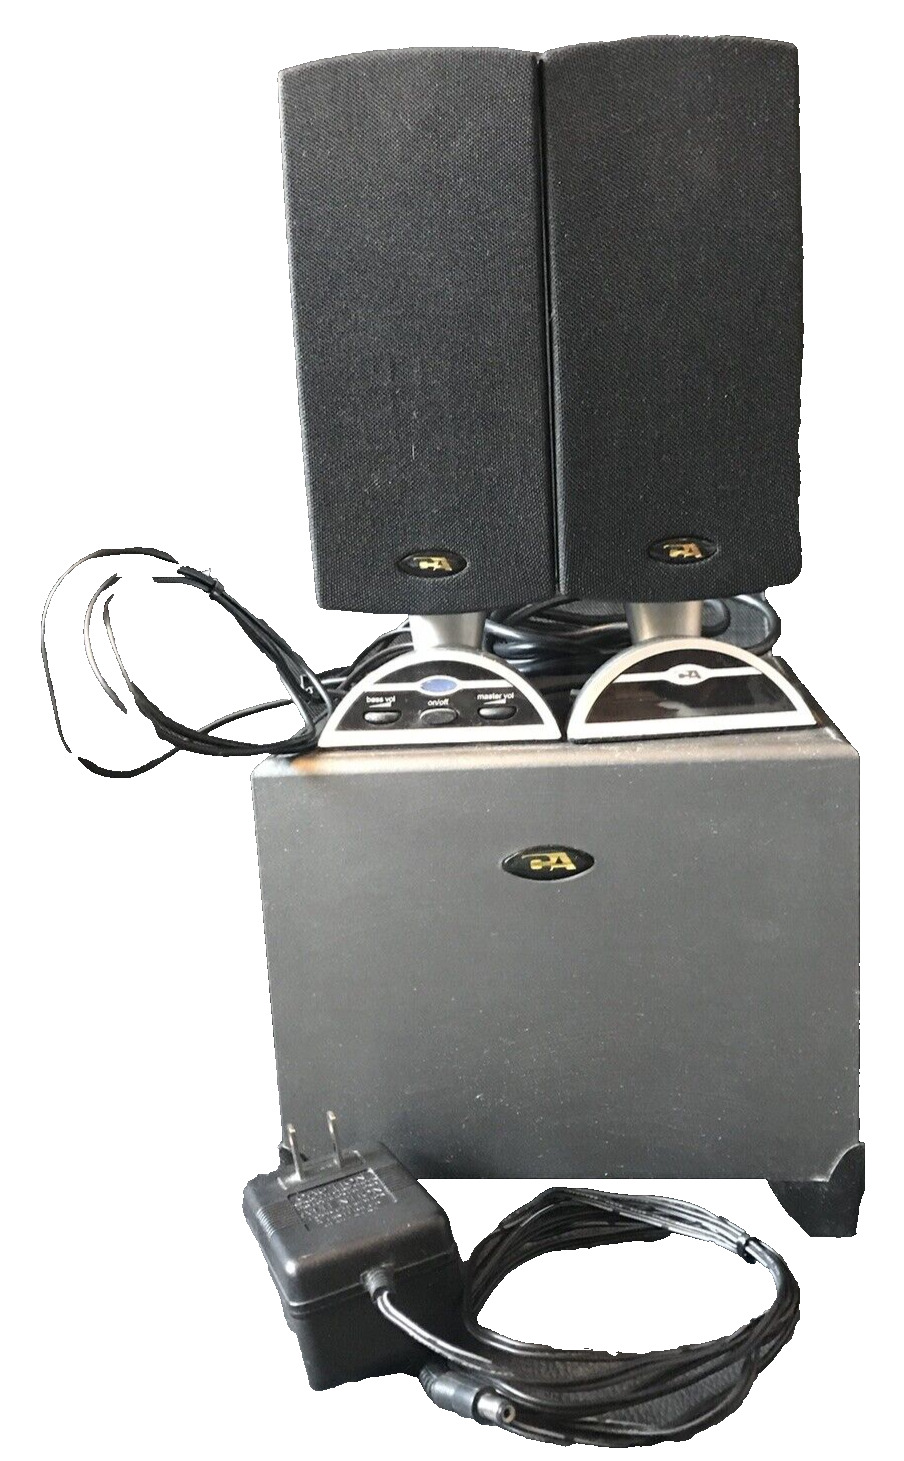 Cyber Acoustic CA-3080 Multimedia 2.1 Sound System Speaker Subwoofer Black D51